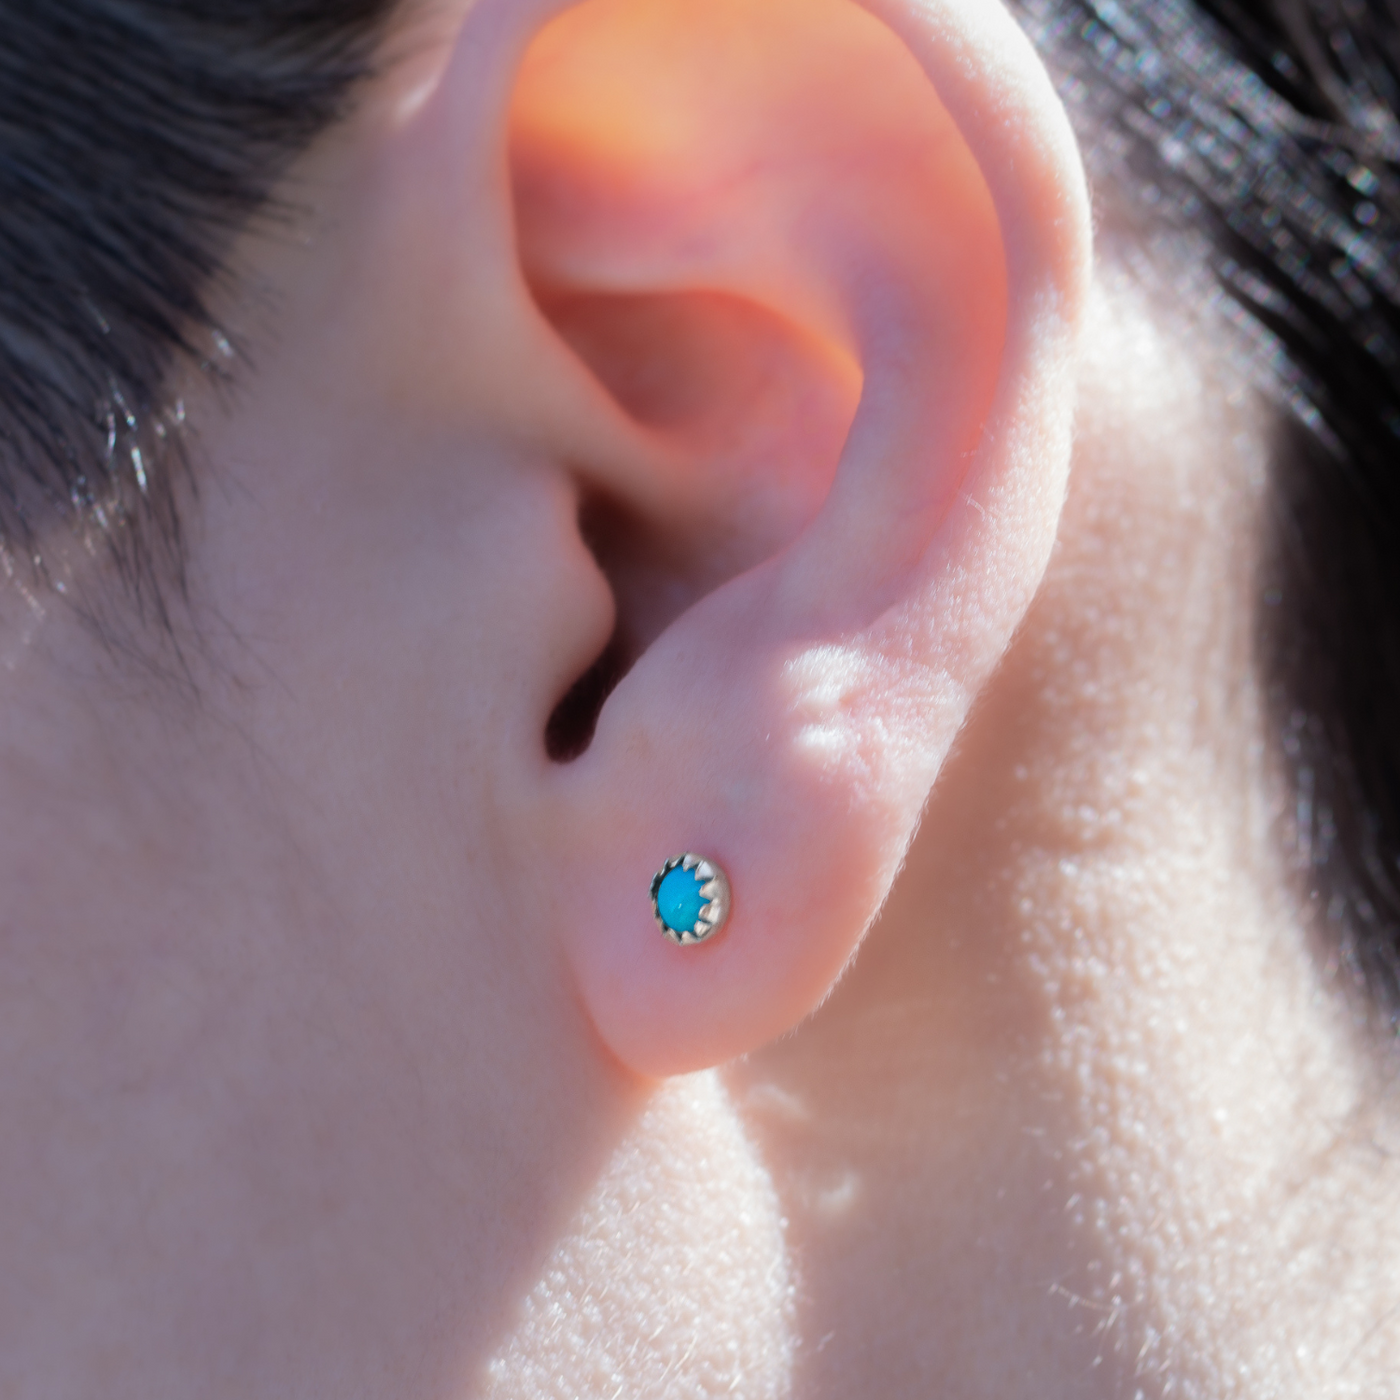 Mini Turquoise Stud Earrings